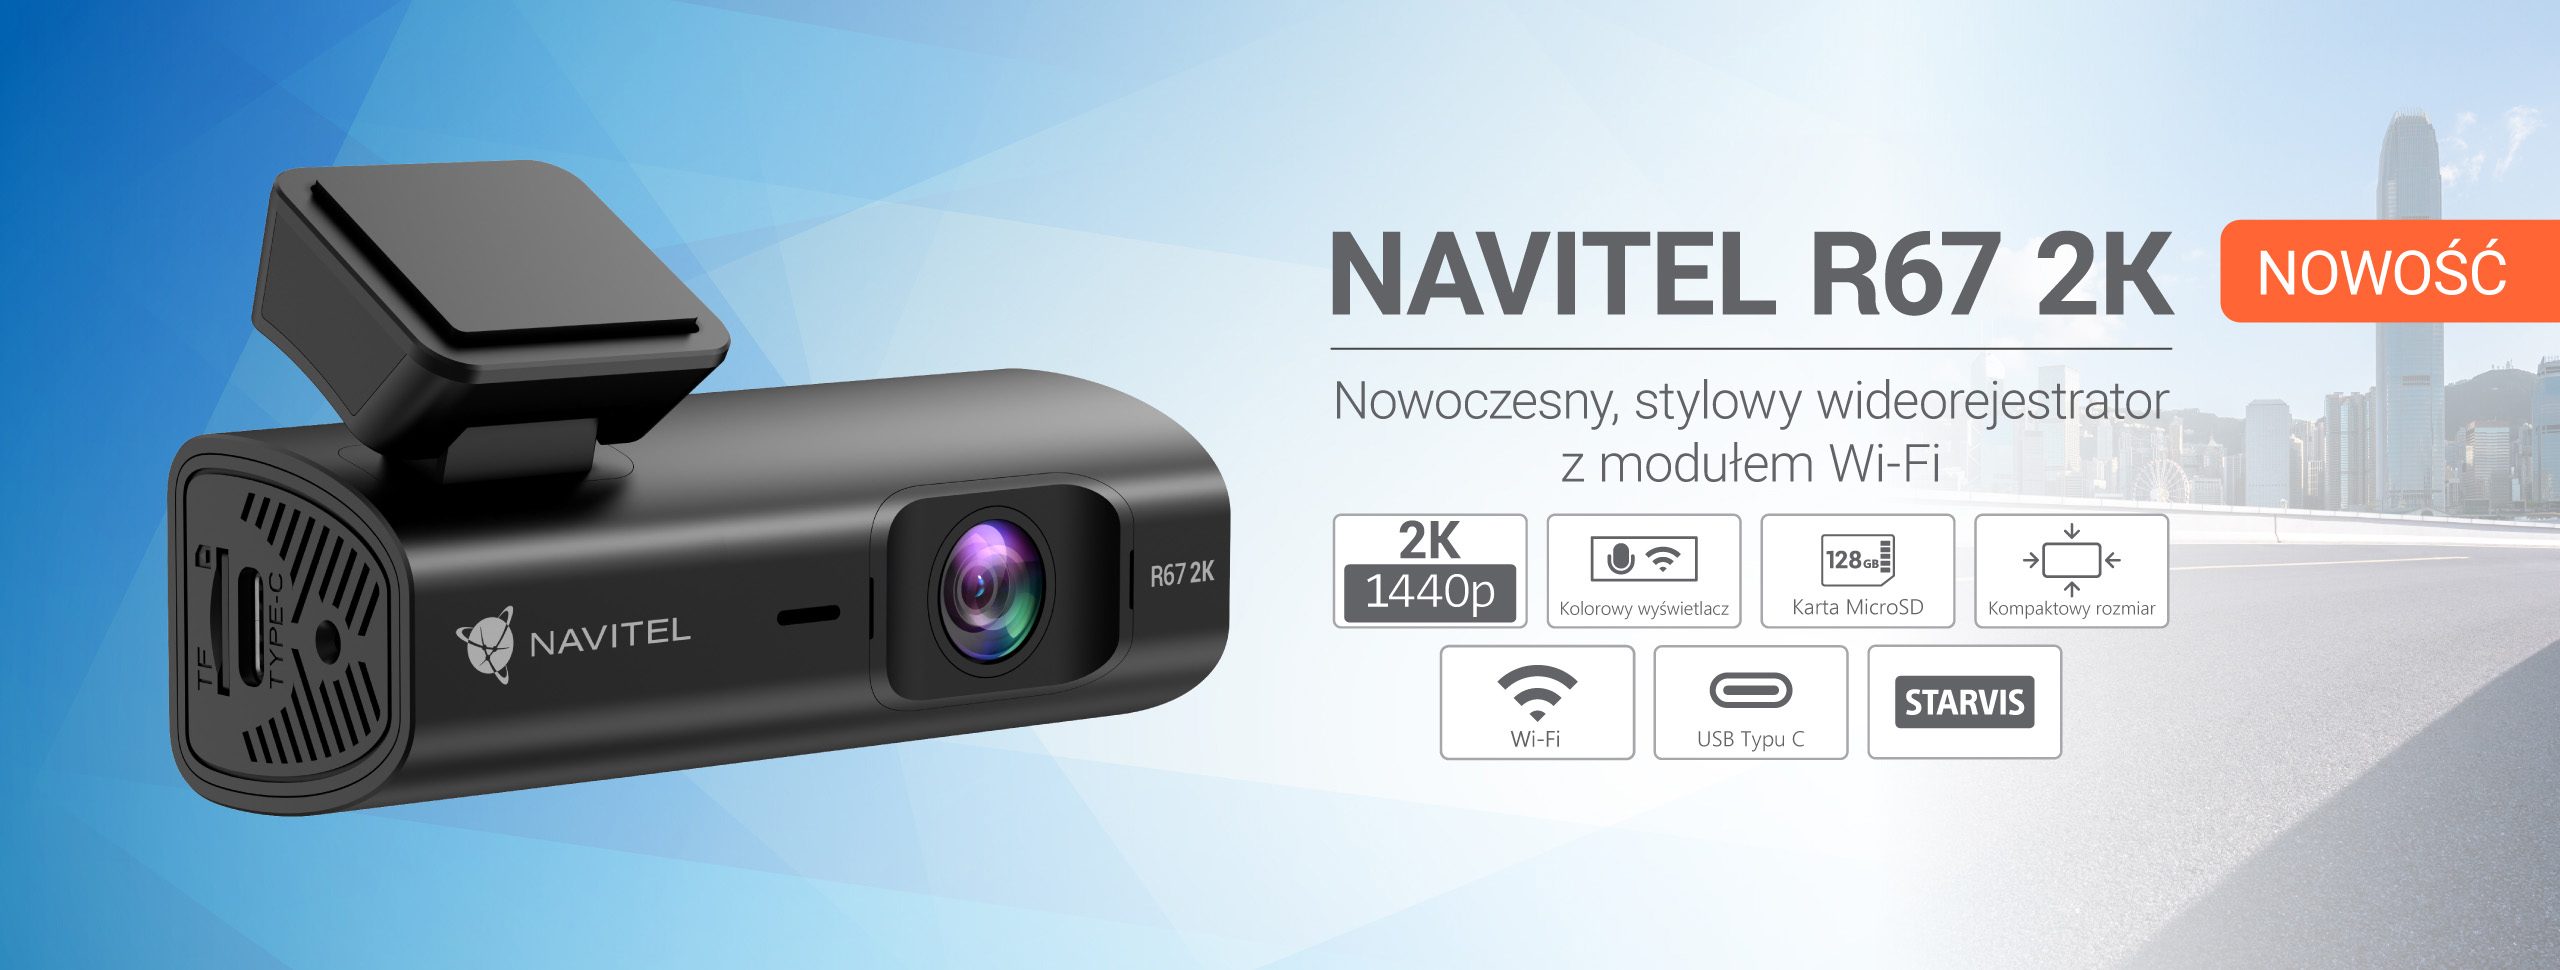 NAVITEL R67 2K to nowoczesna kompaktowa kamera samochodowa z Wi-Fi